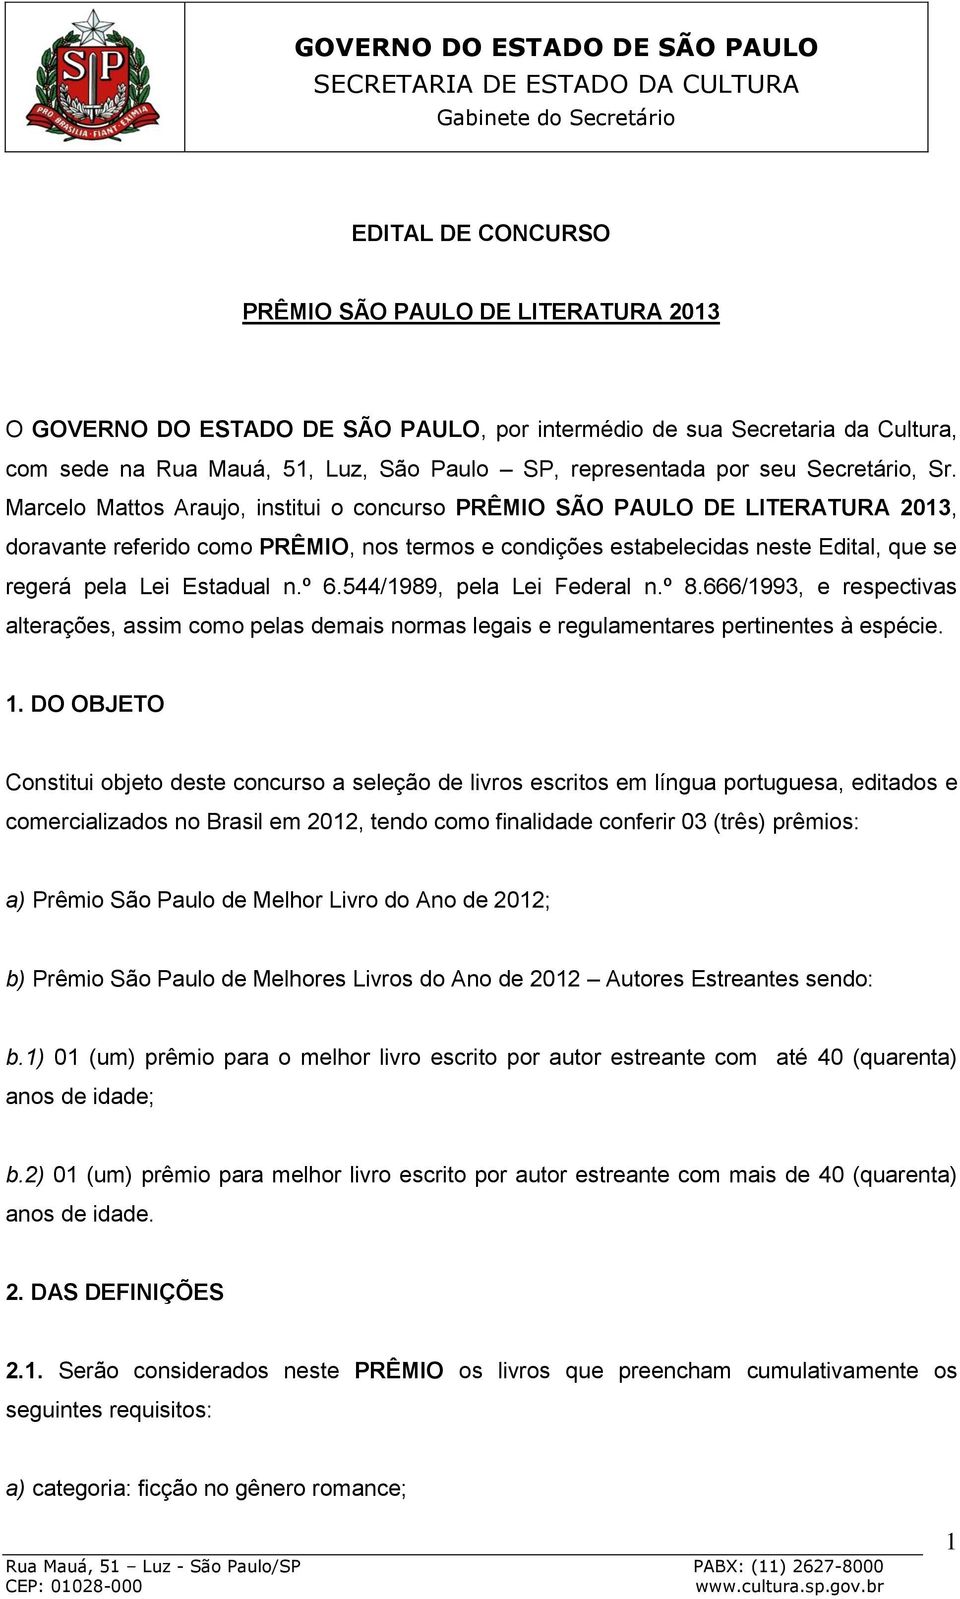 Marcelo Mattos Araujo, institui o concurso PRÊMIO SÃO PAULO DE LITERATURA 2013, doravante referido como PRÊMIO, nos termos e condições estabelecidas neste Edital, que se regerá pela Lei Estadual n.